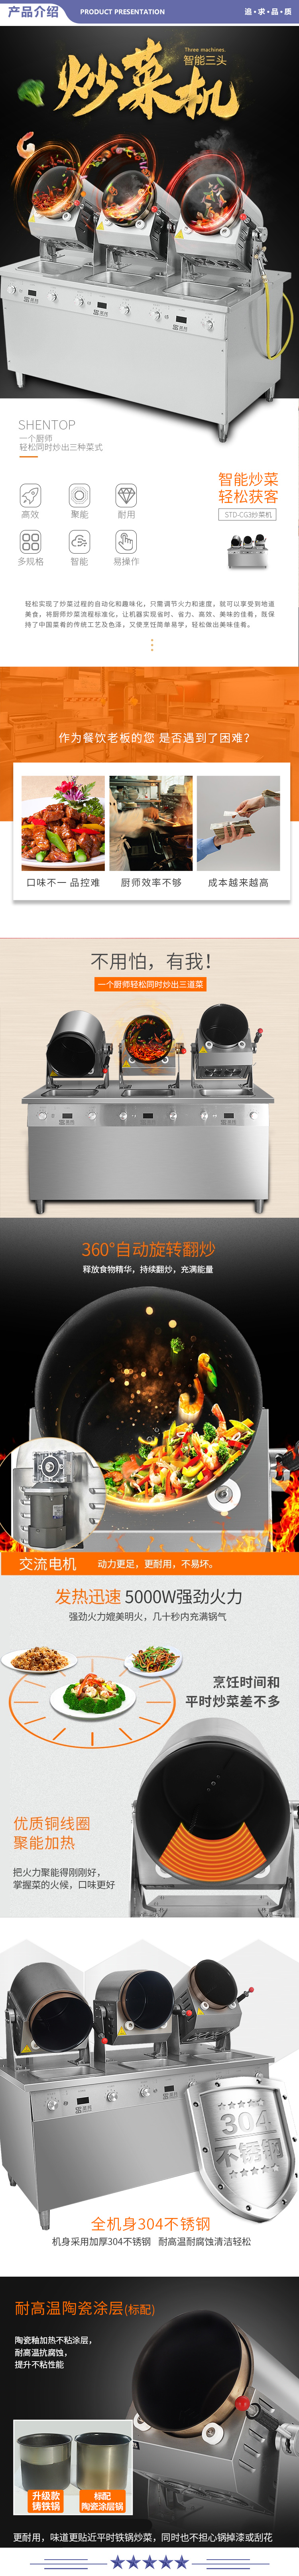 圣托（Shentop） STD-CG3 全自动炒菜机器人 自动炒饭机 做饭机 电磁烹饪锅 三台连体炒菜机 2.jpg